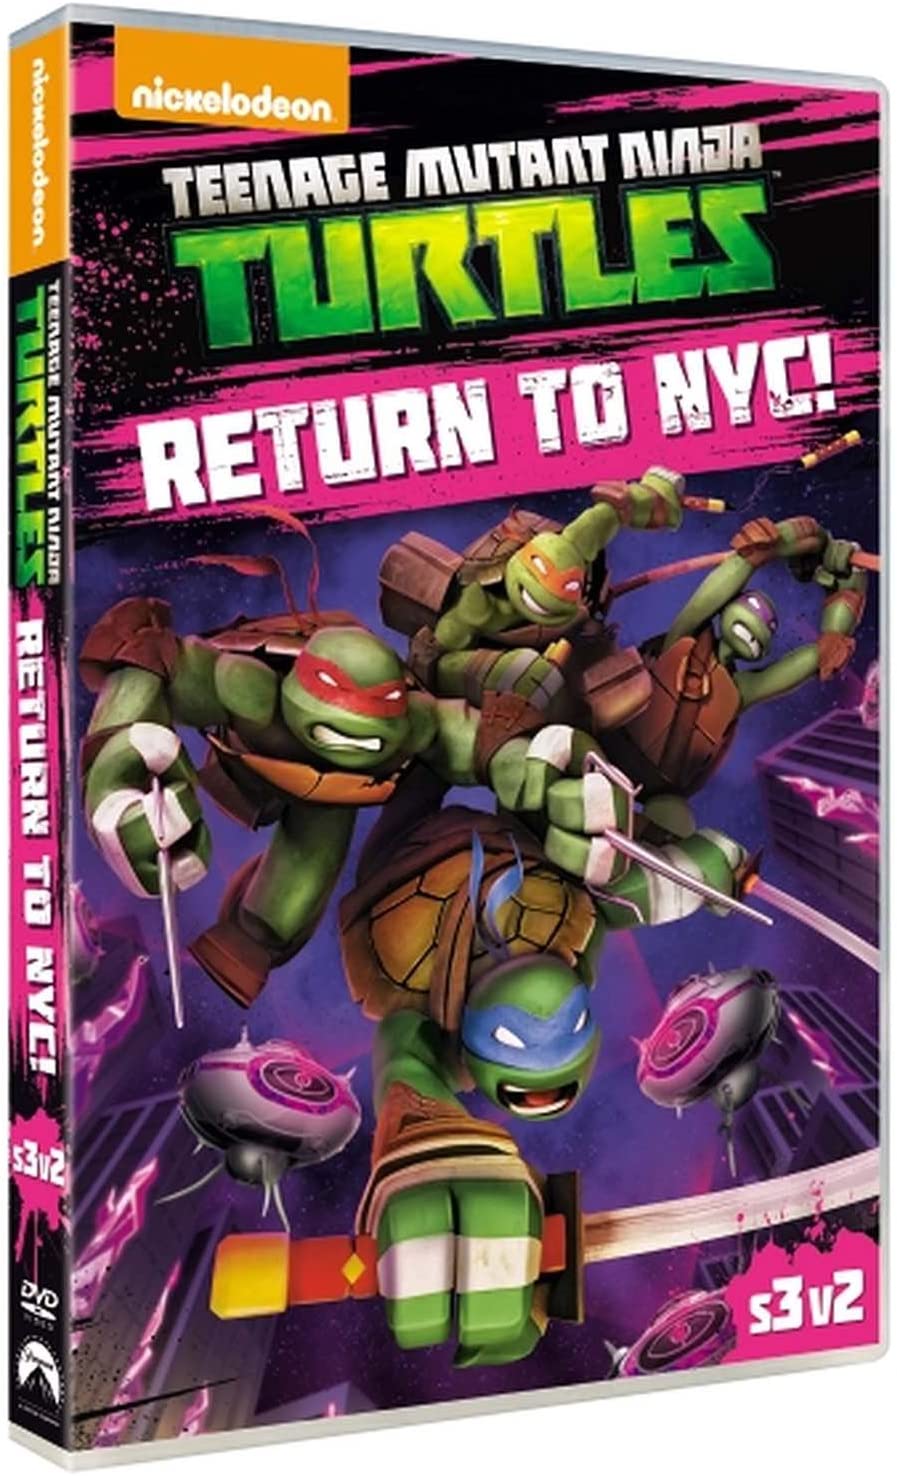 Teenage Mutant Ninja Turtles kehren nach NYC zurück [DVD] [2014]